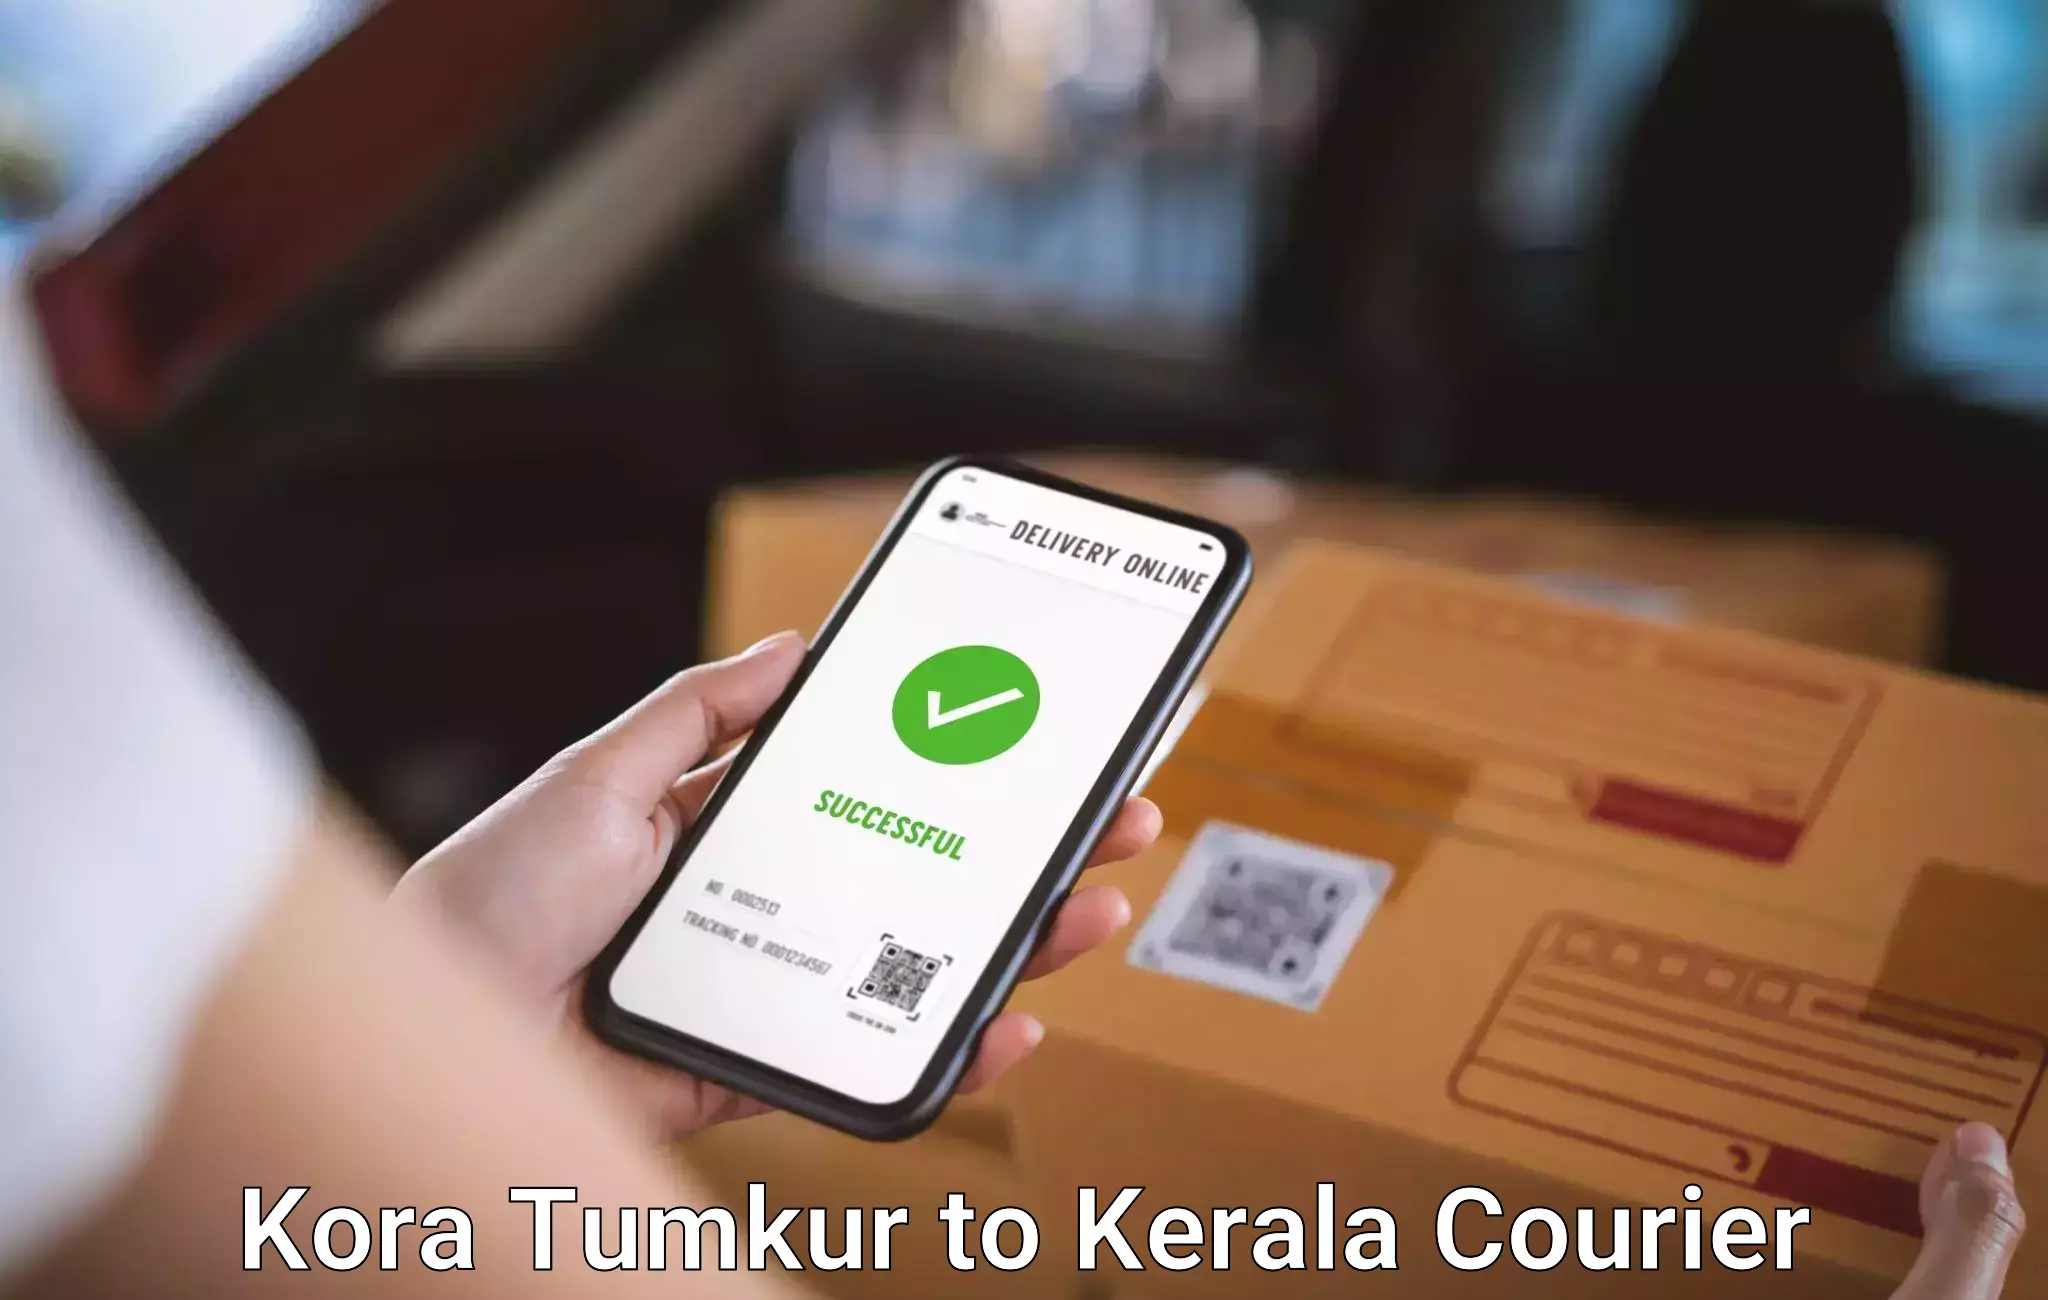 Luggage forwarding service Kora Tumkur to Pathanamthitta